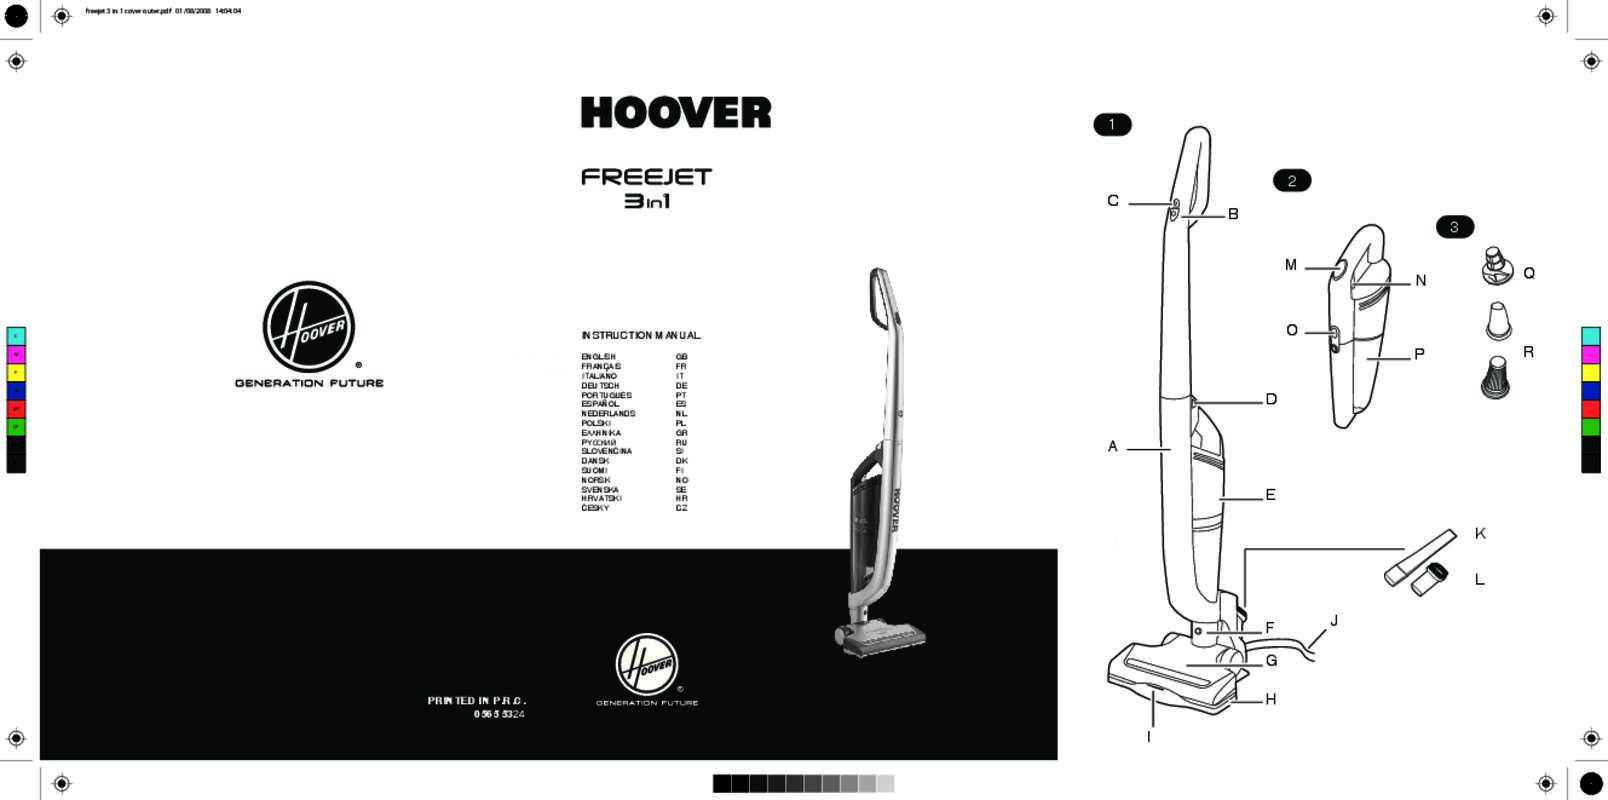 Guide utilisation HOOVER FJ180WV2 FREEJET de la marque HOOVER